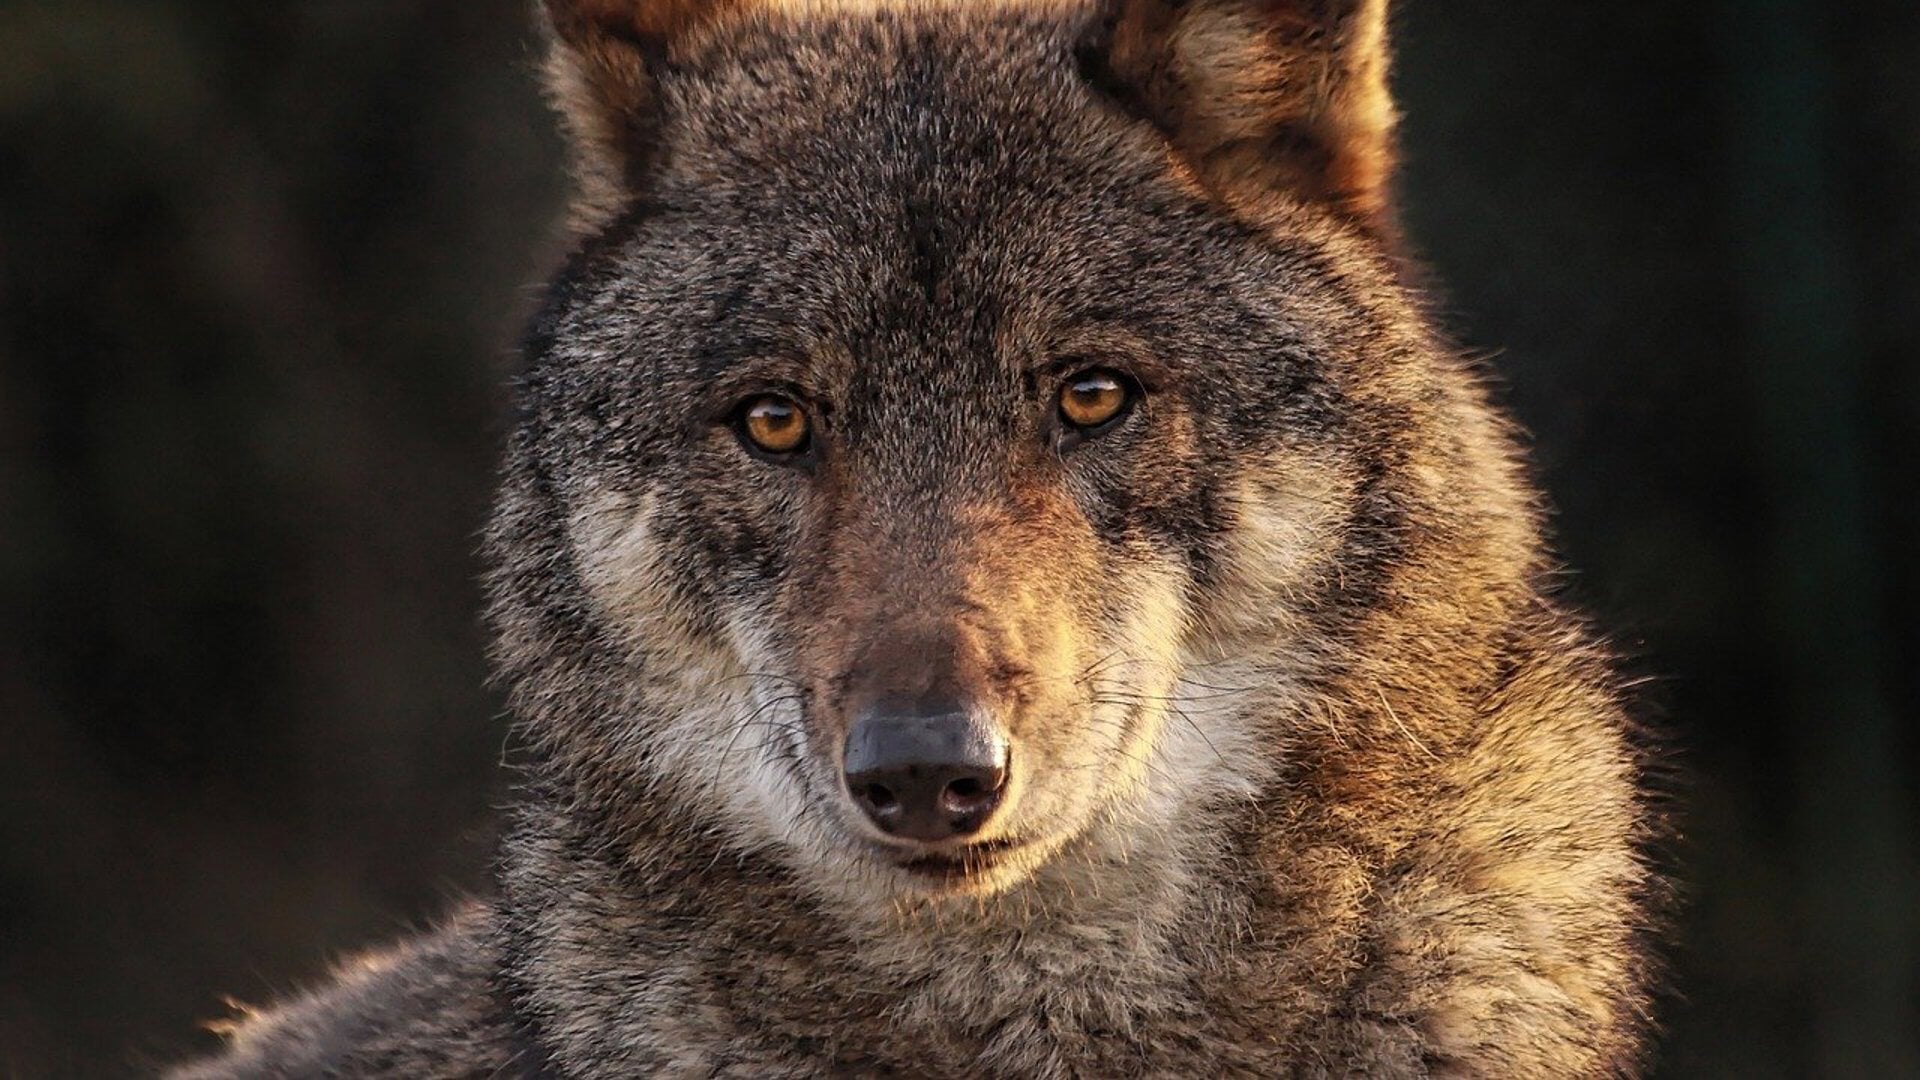 Contact tussen mens/huisdier en de wolf zal de komende jaren wellicht steeds vaker voorkomen.  